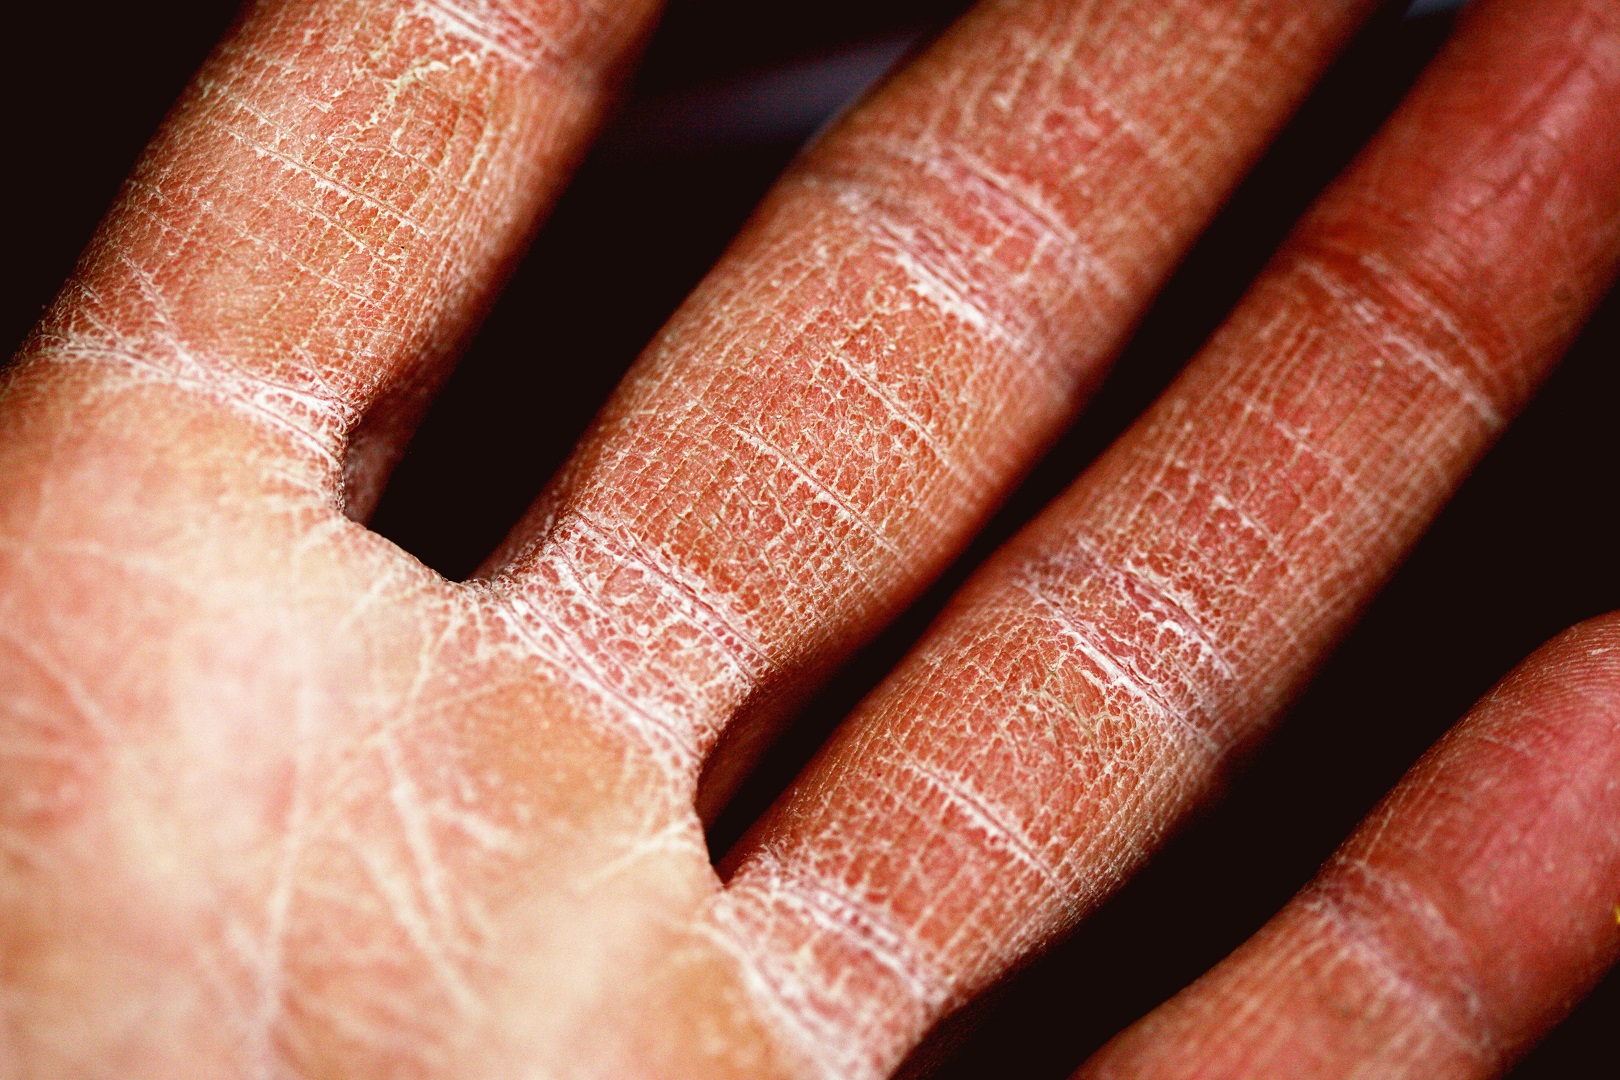 eczema piel seca agrietada mano dedos